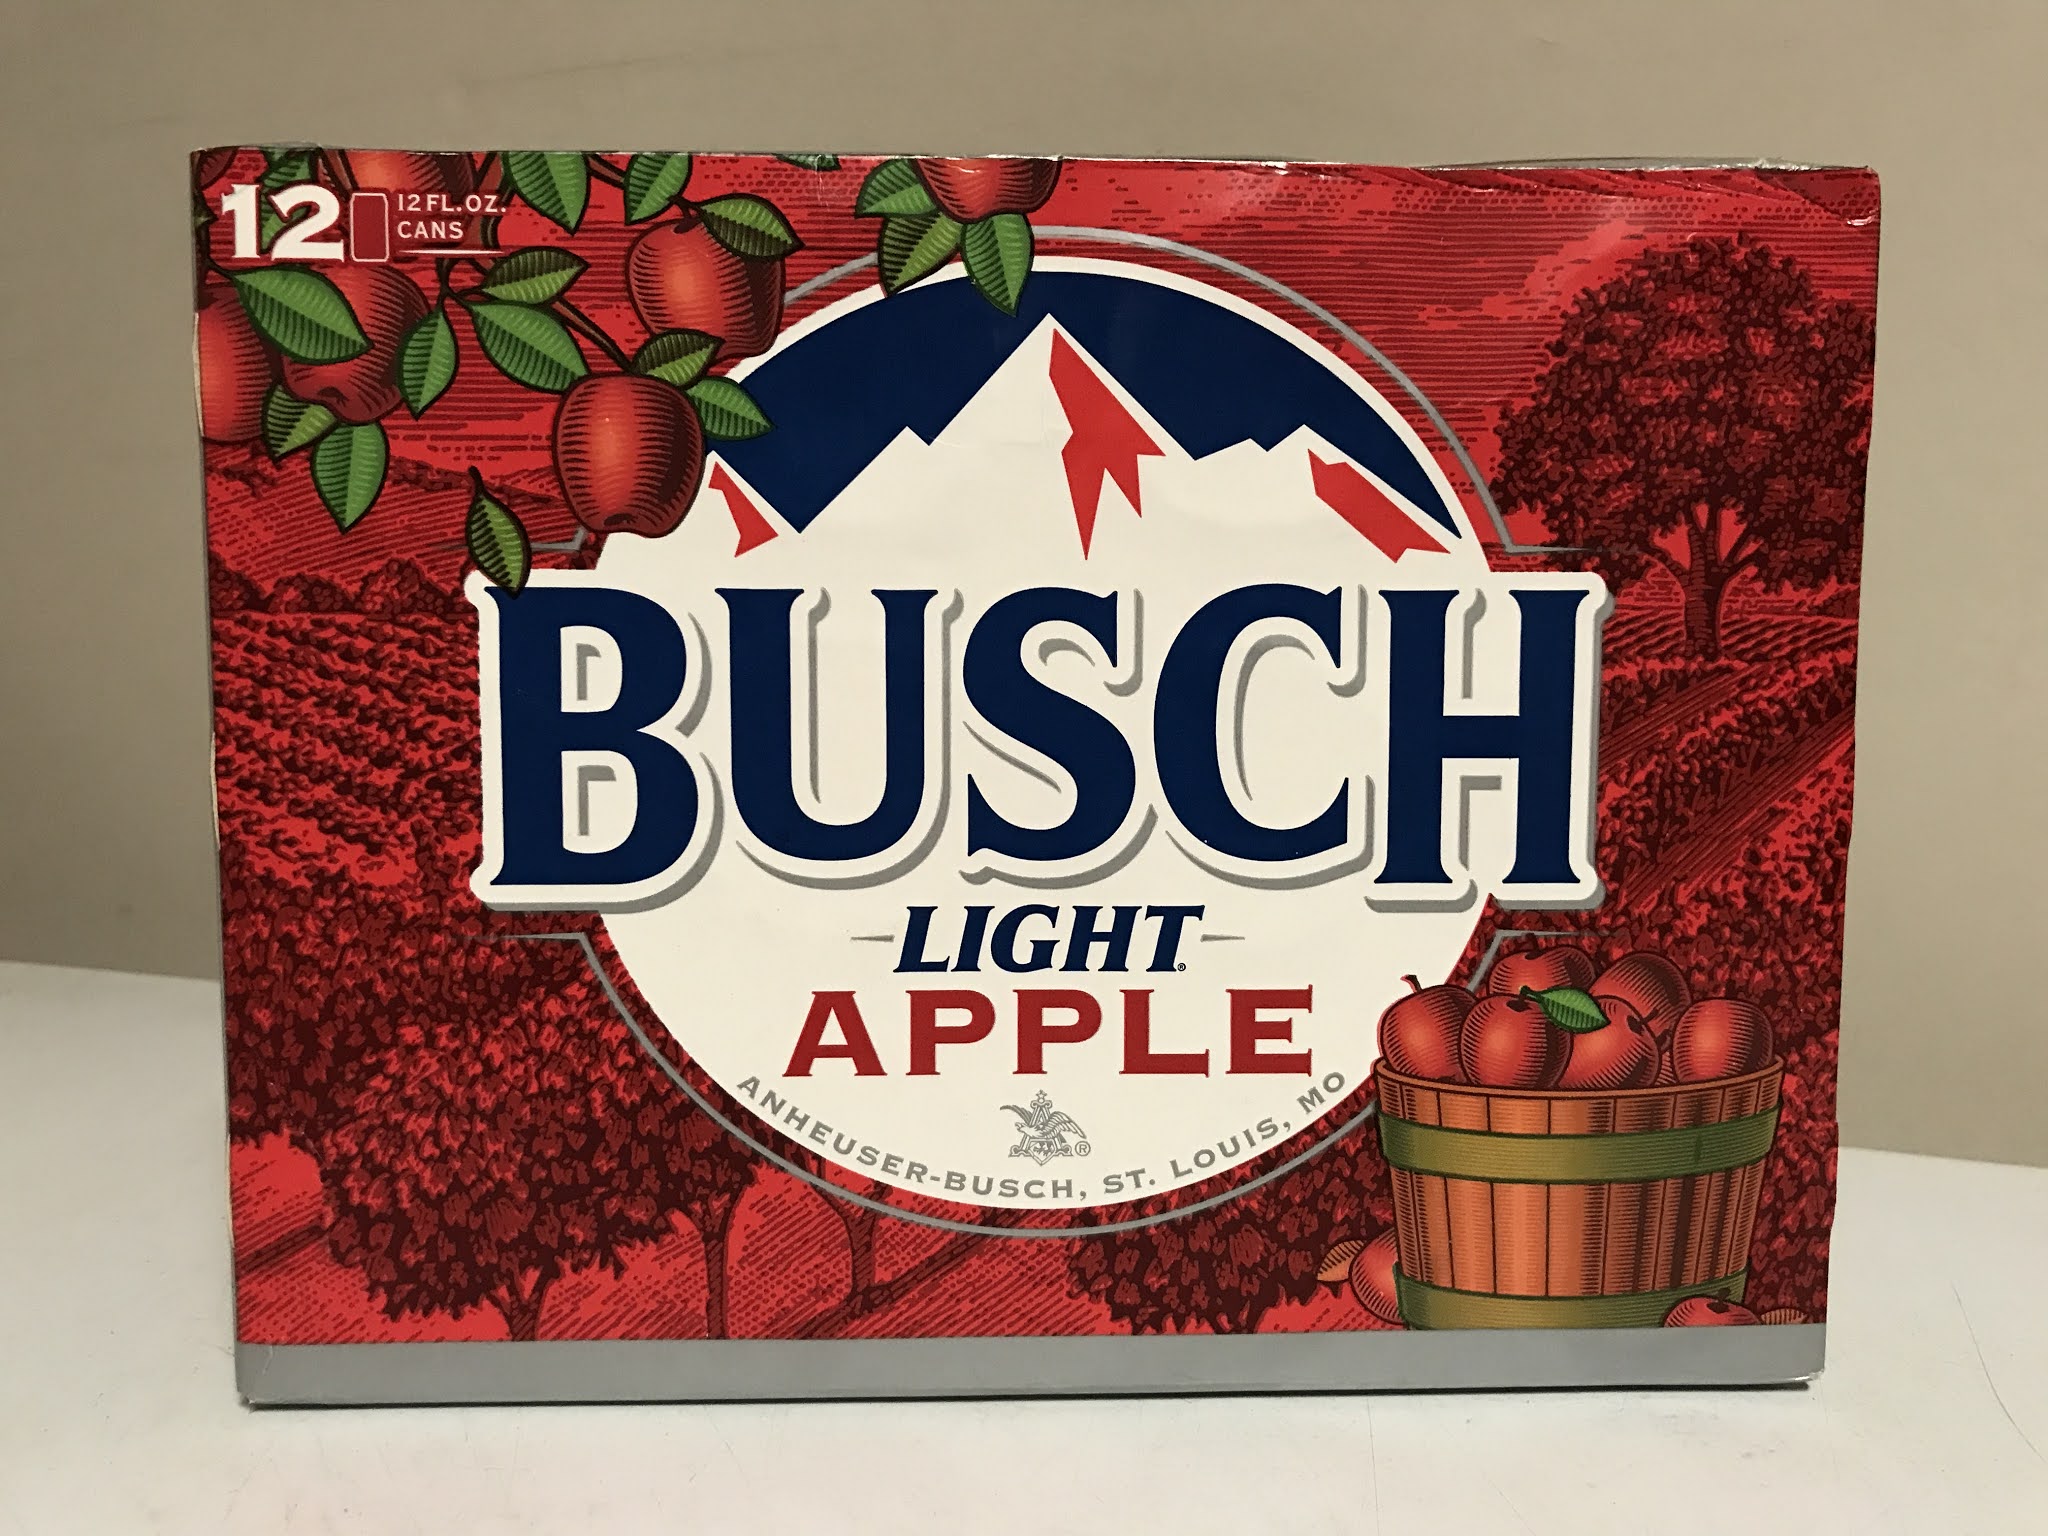 Busch Beer Wallpapers